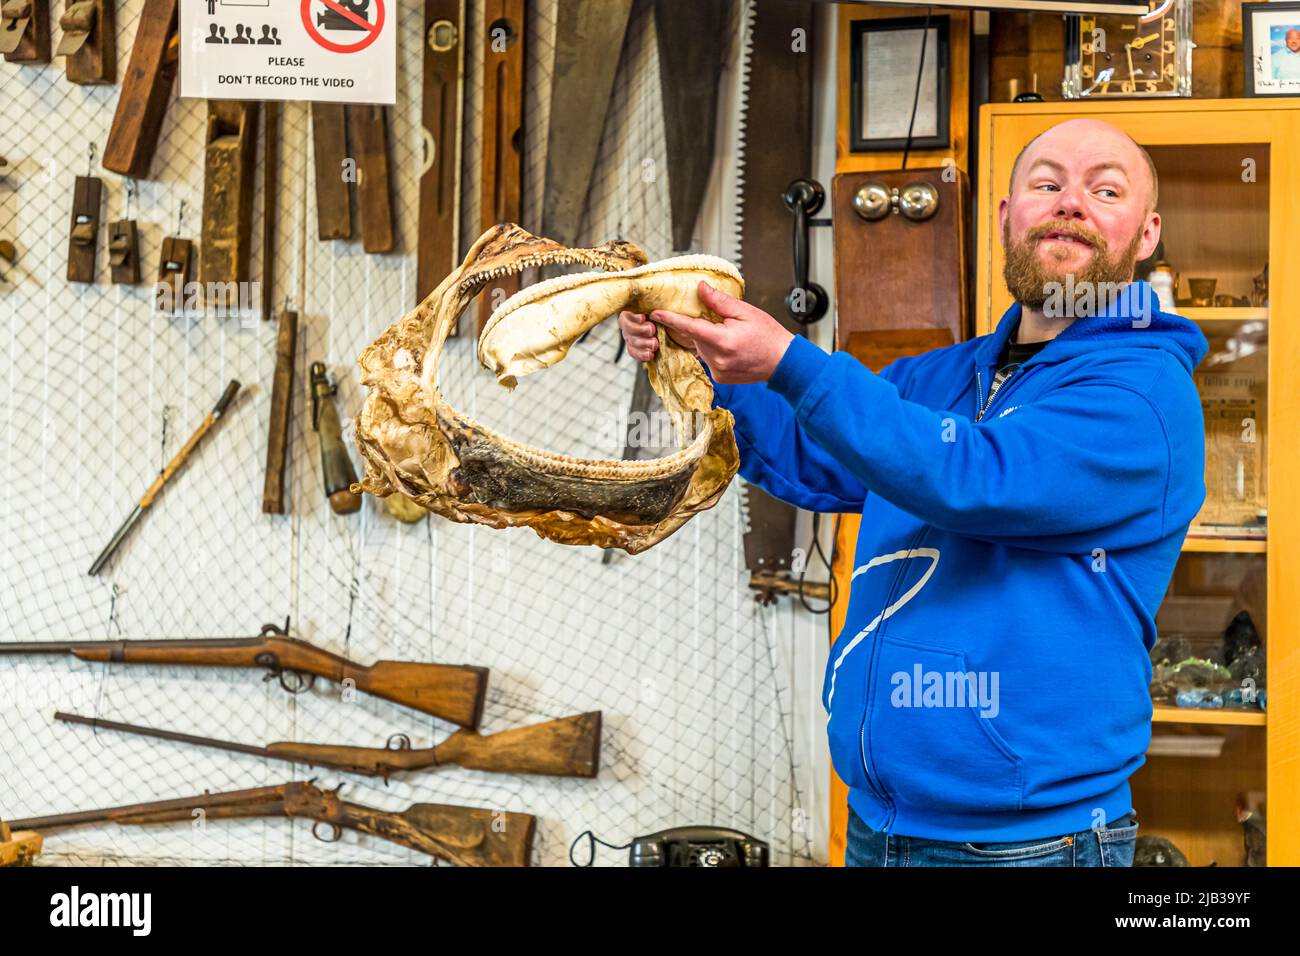 Guðjón Hildibrandsson ist Manager im familiengeführten Bjarnahöfn Shark Museum. Er benutzt ein Haimaul, um das Fütterungsverhalten der Haie zu demonstrieren. Bjarnarhöfn Iceland Shark Museum, wo das Geheimnis des fermentierten Hais gelöst ist. Hier wird das Gebiss eines Grönlandhais präsentiert Stockfoto